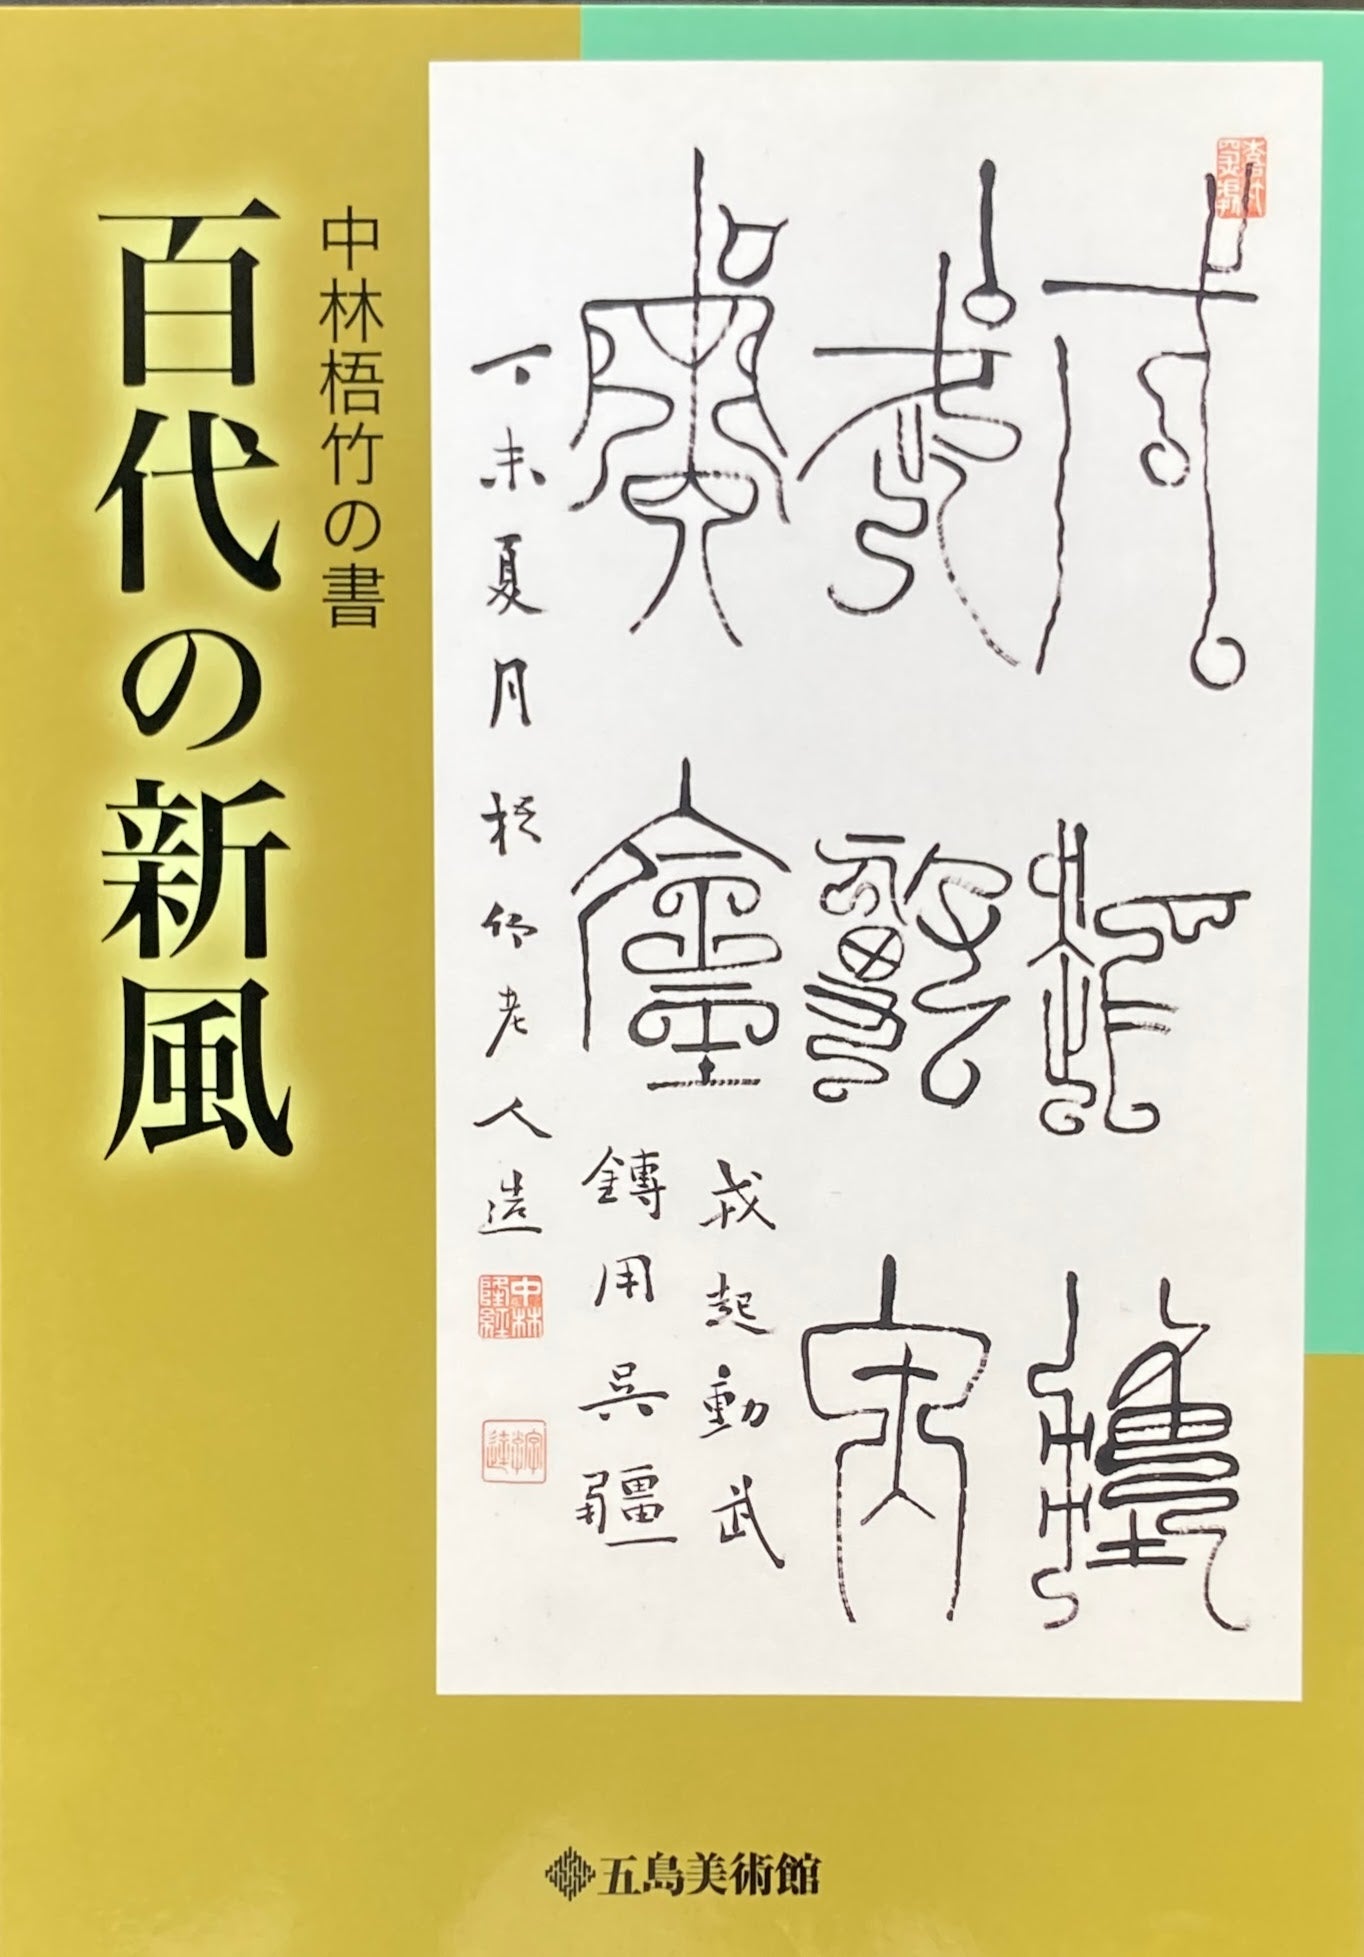 中林梧竹の書 百代の新風 五島美術館 – smokebooks shop